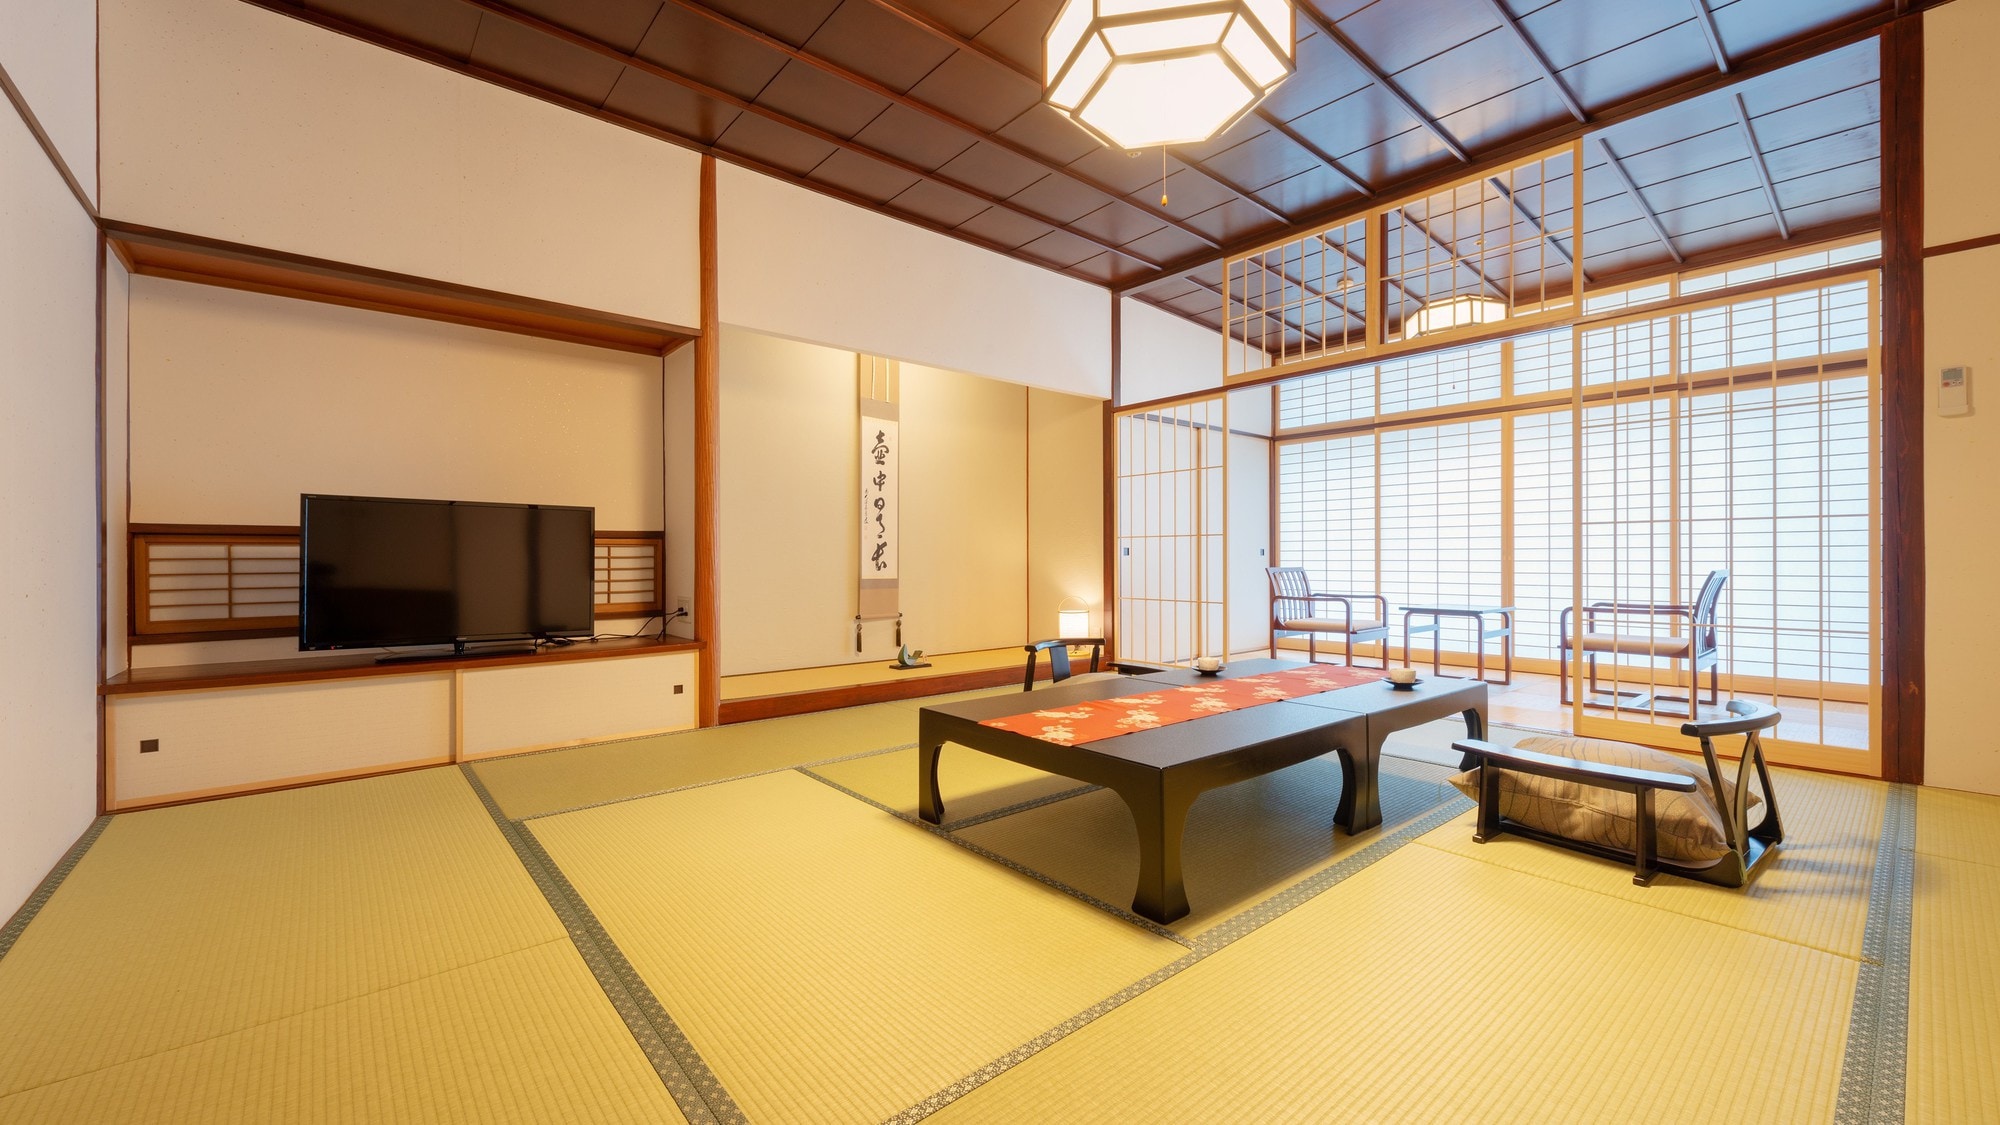 擁有純正日式木紋和高品質環境的寧靜房間